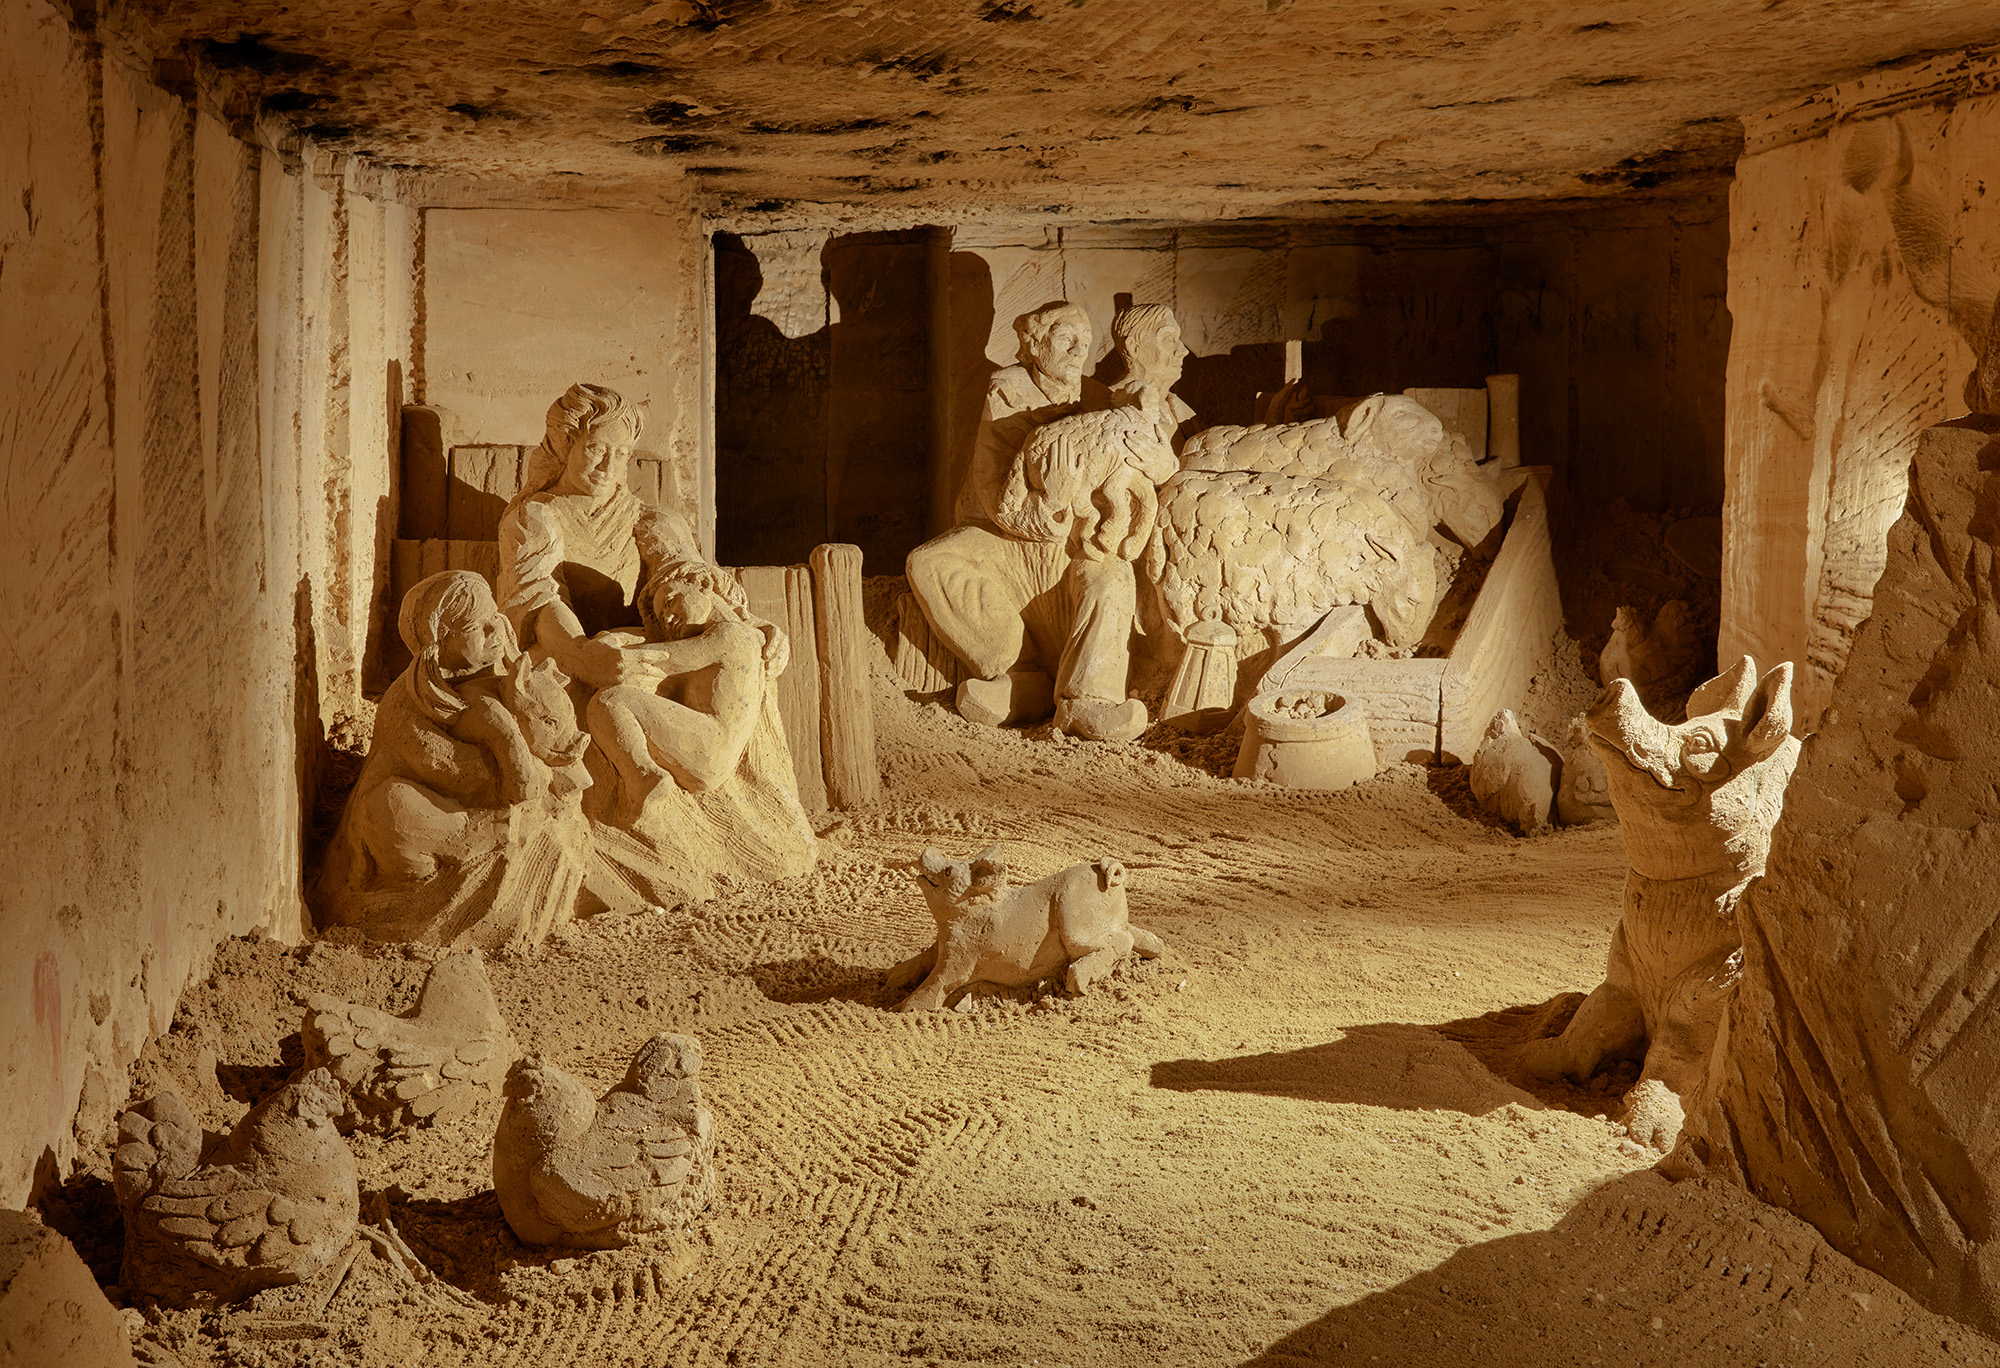  Caves Valkenburg